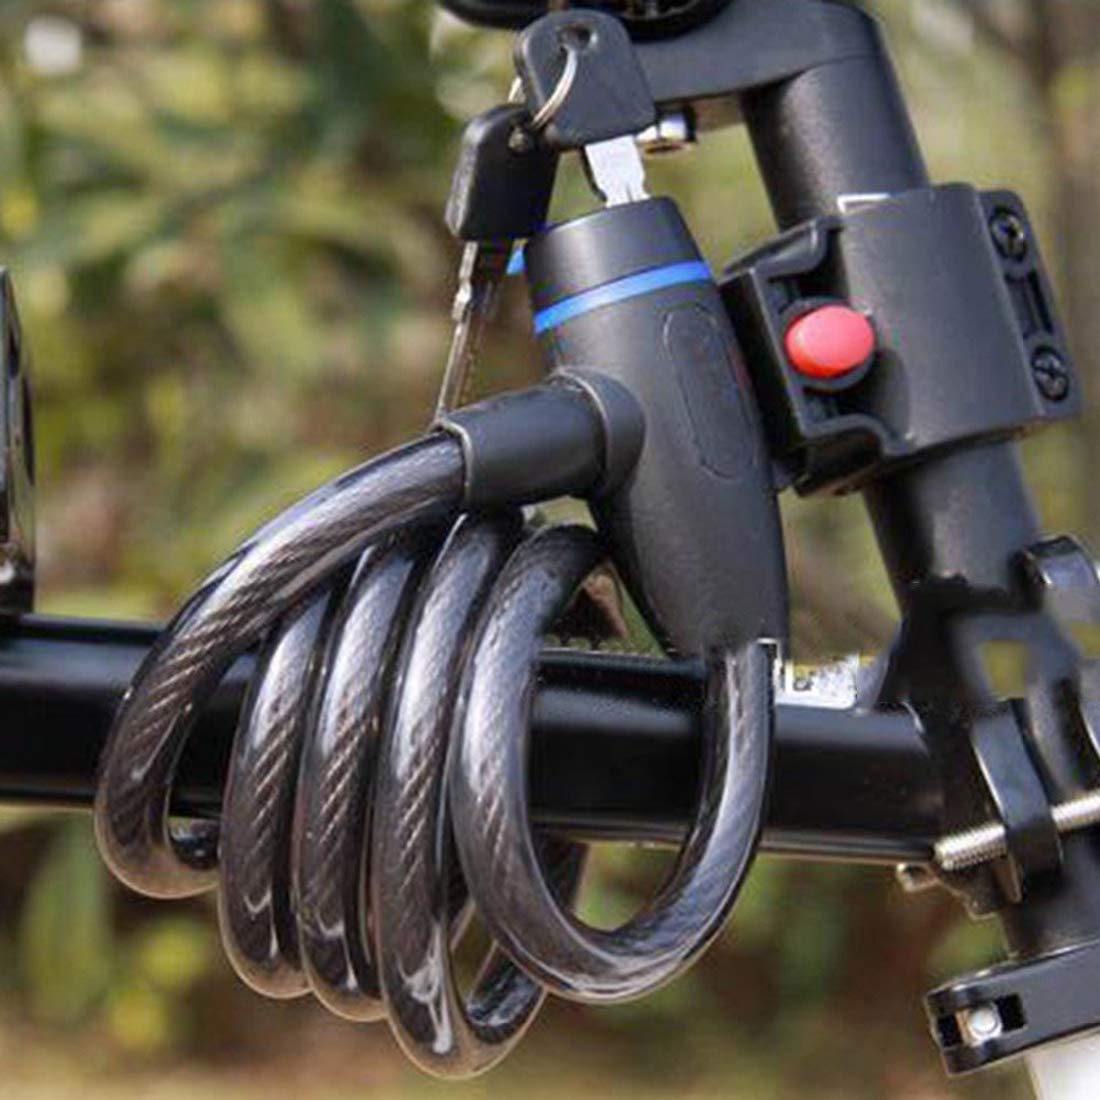 Prokick Heavy Duty Multipurpose Lock/Bicycle Cycle Bike Helmet Lock with Keys - Best Price online Prokicksports.com